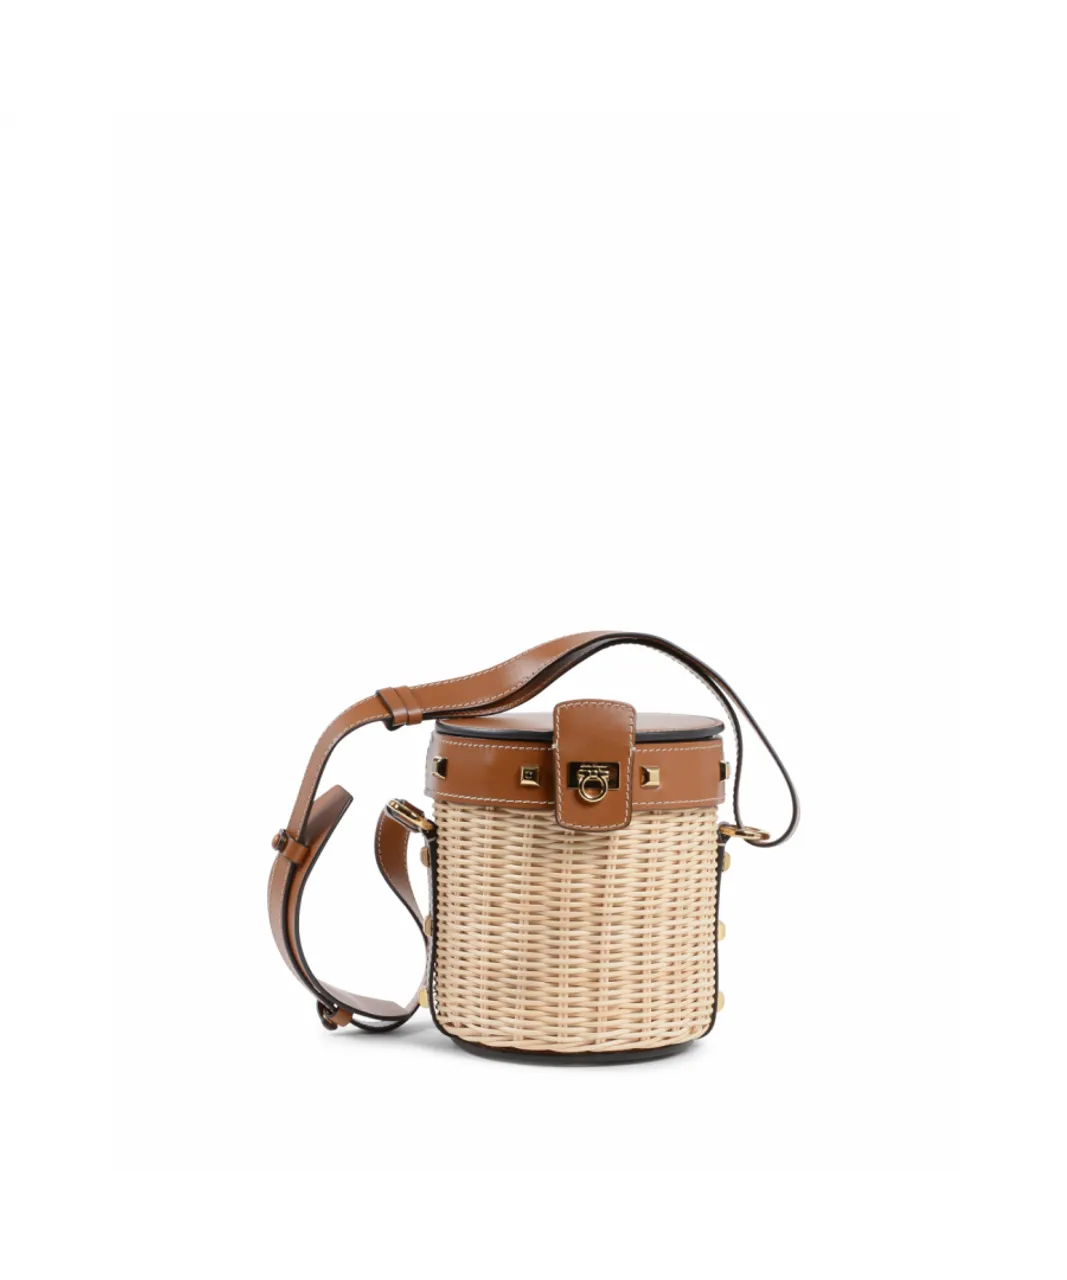 Salvatore Ferragamo Womens Shoulder Bag 22D159 684013 - Multicolour Leather - One Size